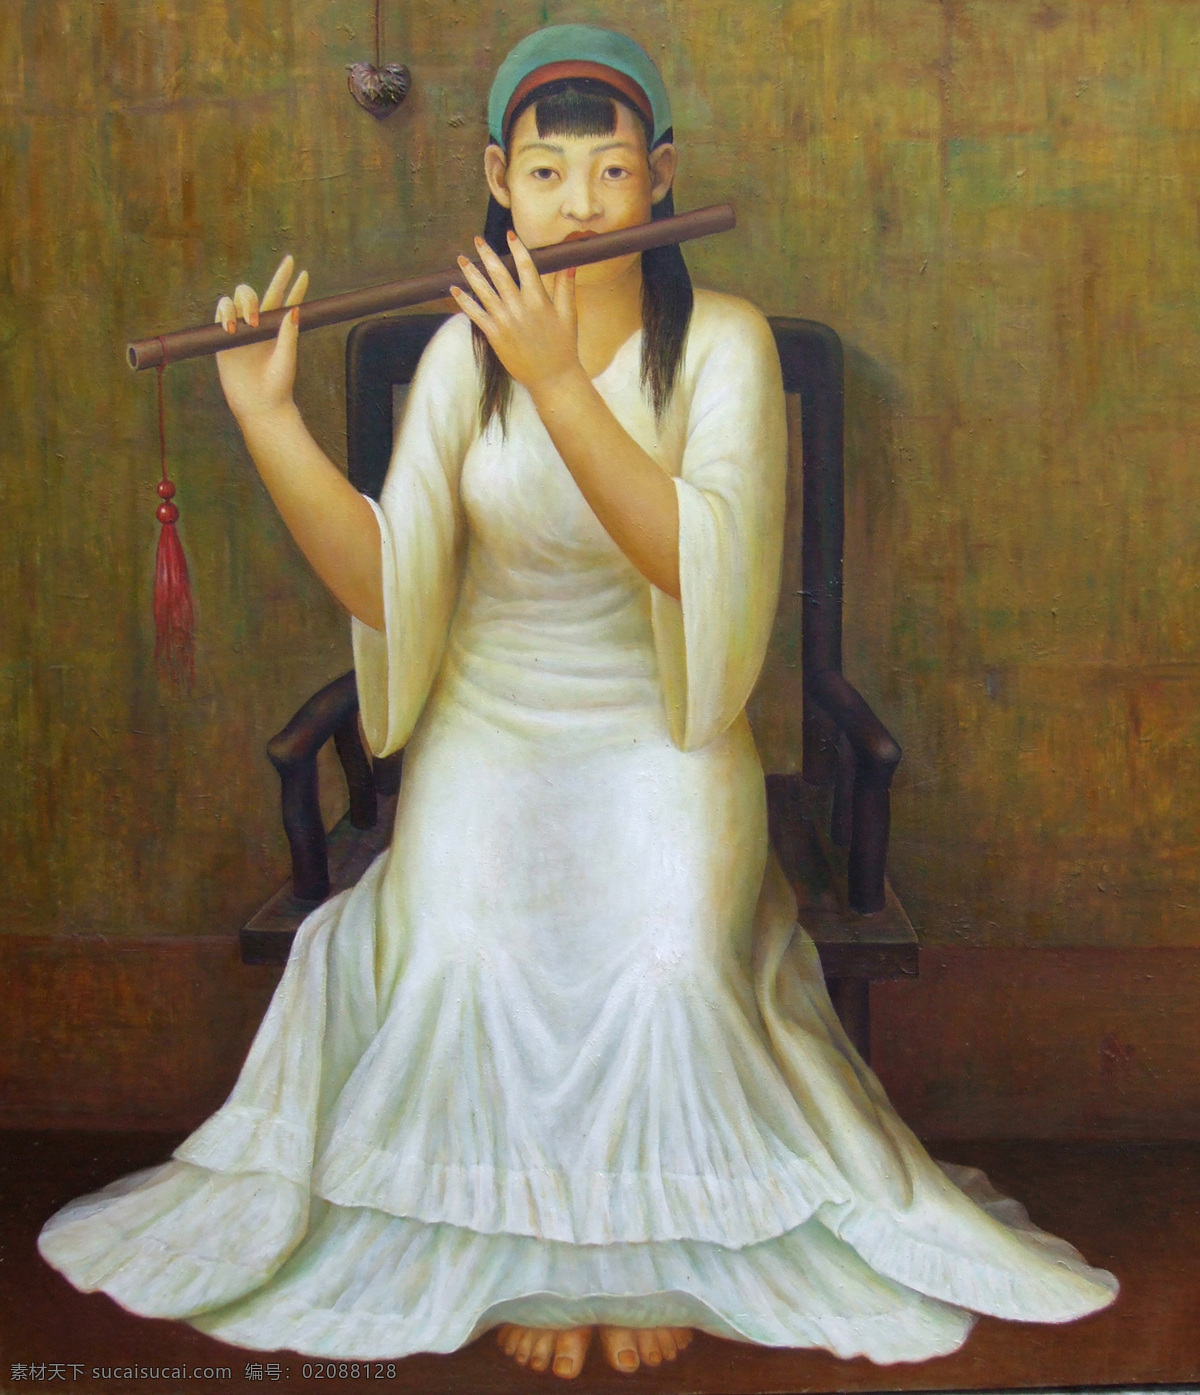 坐在 椅子 上 吹 笛子 东方 少女 油画 东方人物 绘画 文化艺术 世界名画 书画文字